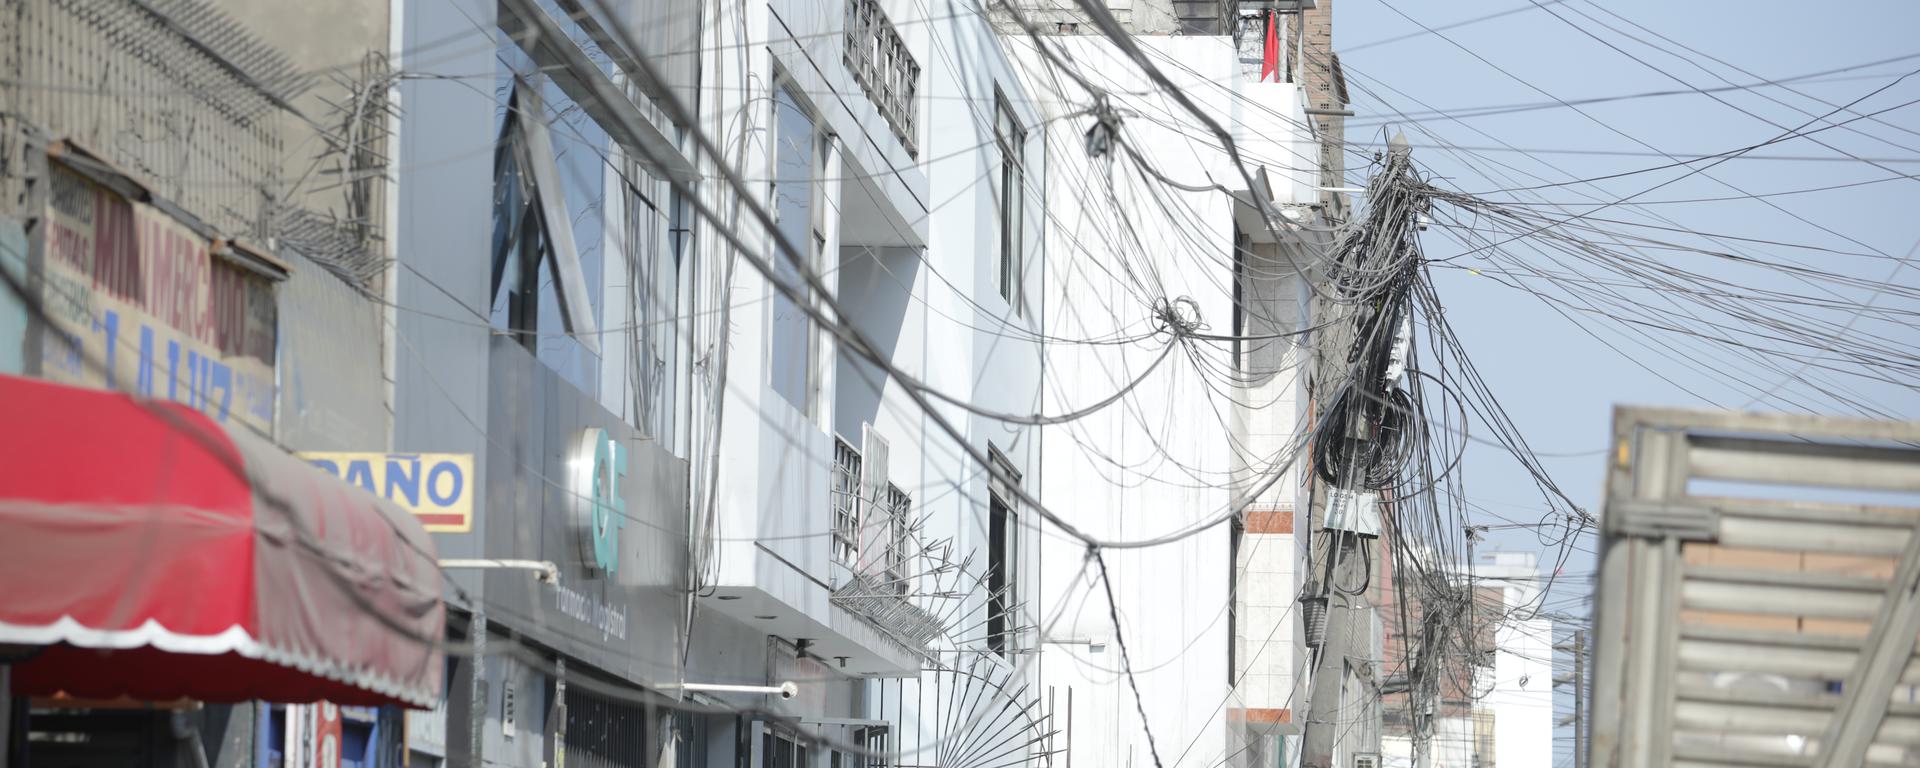 El poste de los 200 cables: indignación en Los Olivos por maraña que pone en riesgo a decenas de vecinos